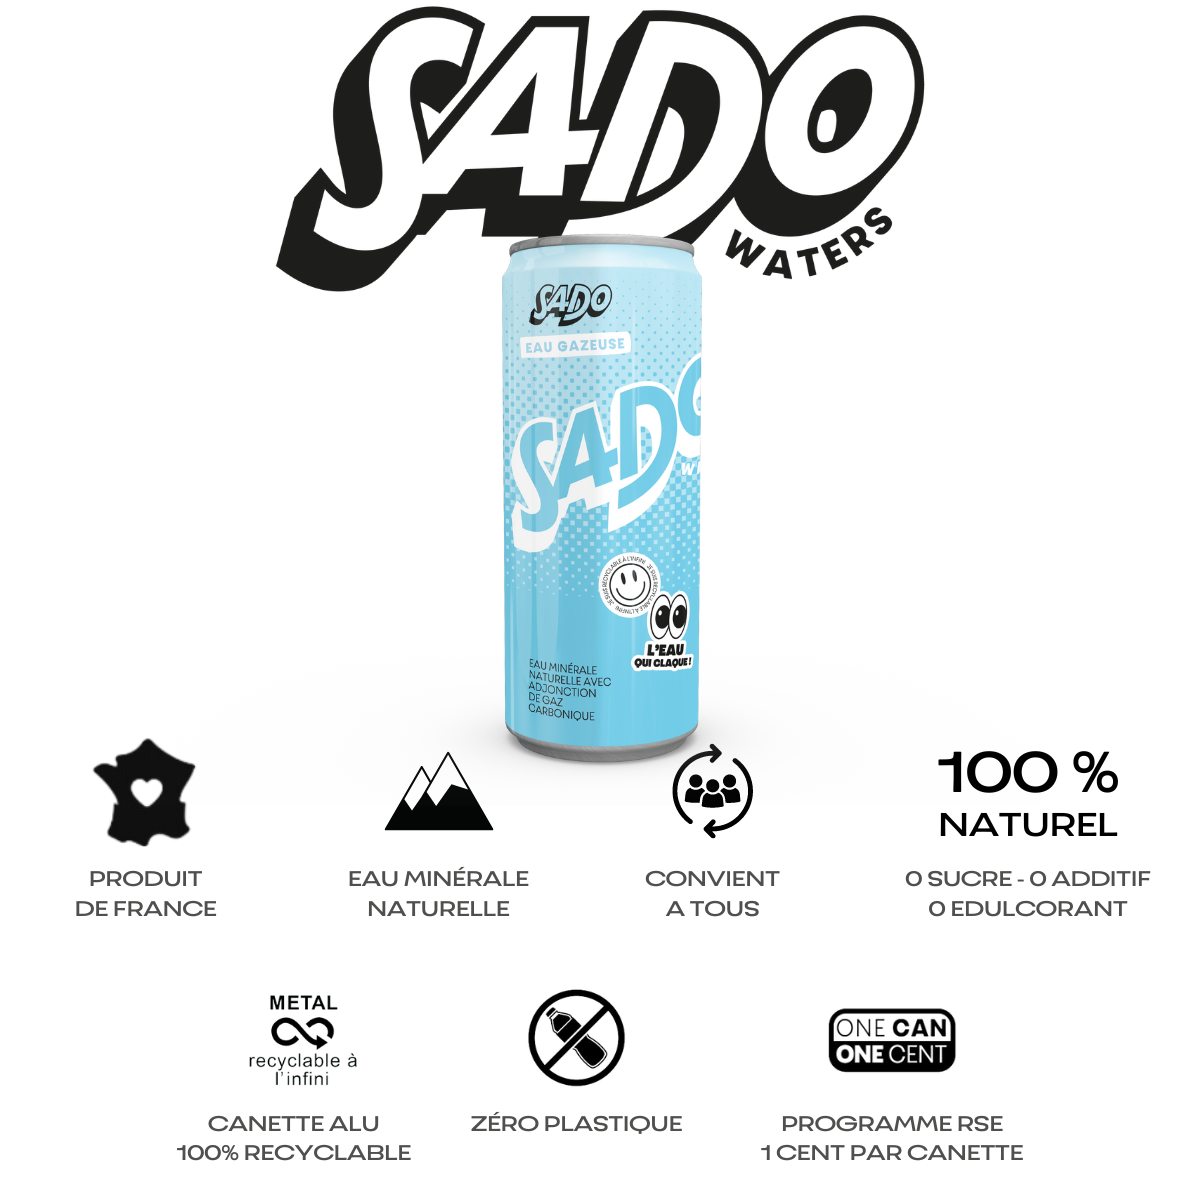 Descriptif visuel sous forme de pictogrammes des avantages de l'eau minérale gazeuse SADO Waters : produite en France, 100% naturelle, zéro plastique, canette alu recyclable à l'infini et sans BPA